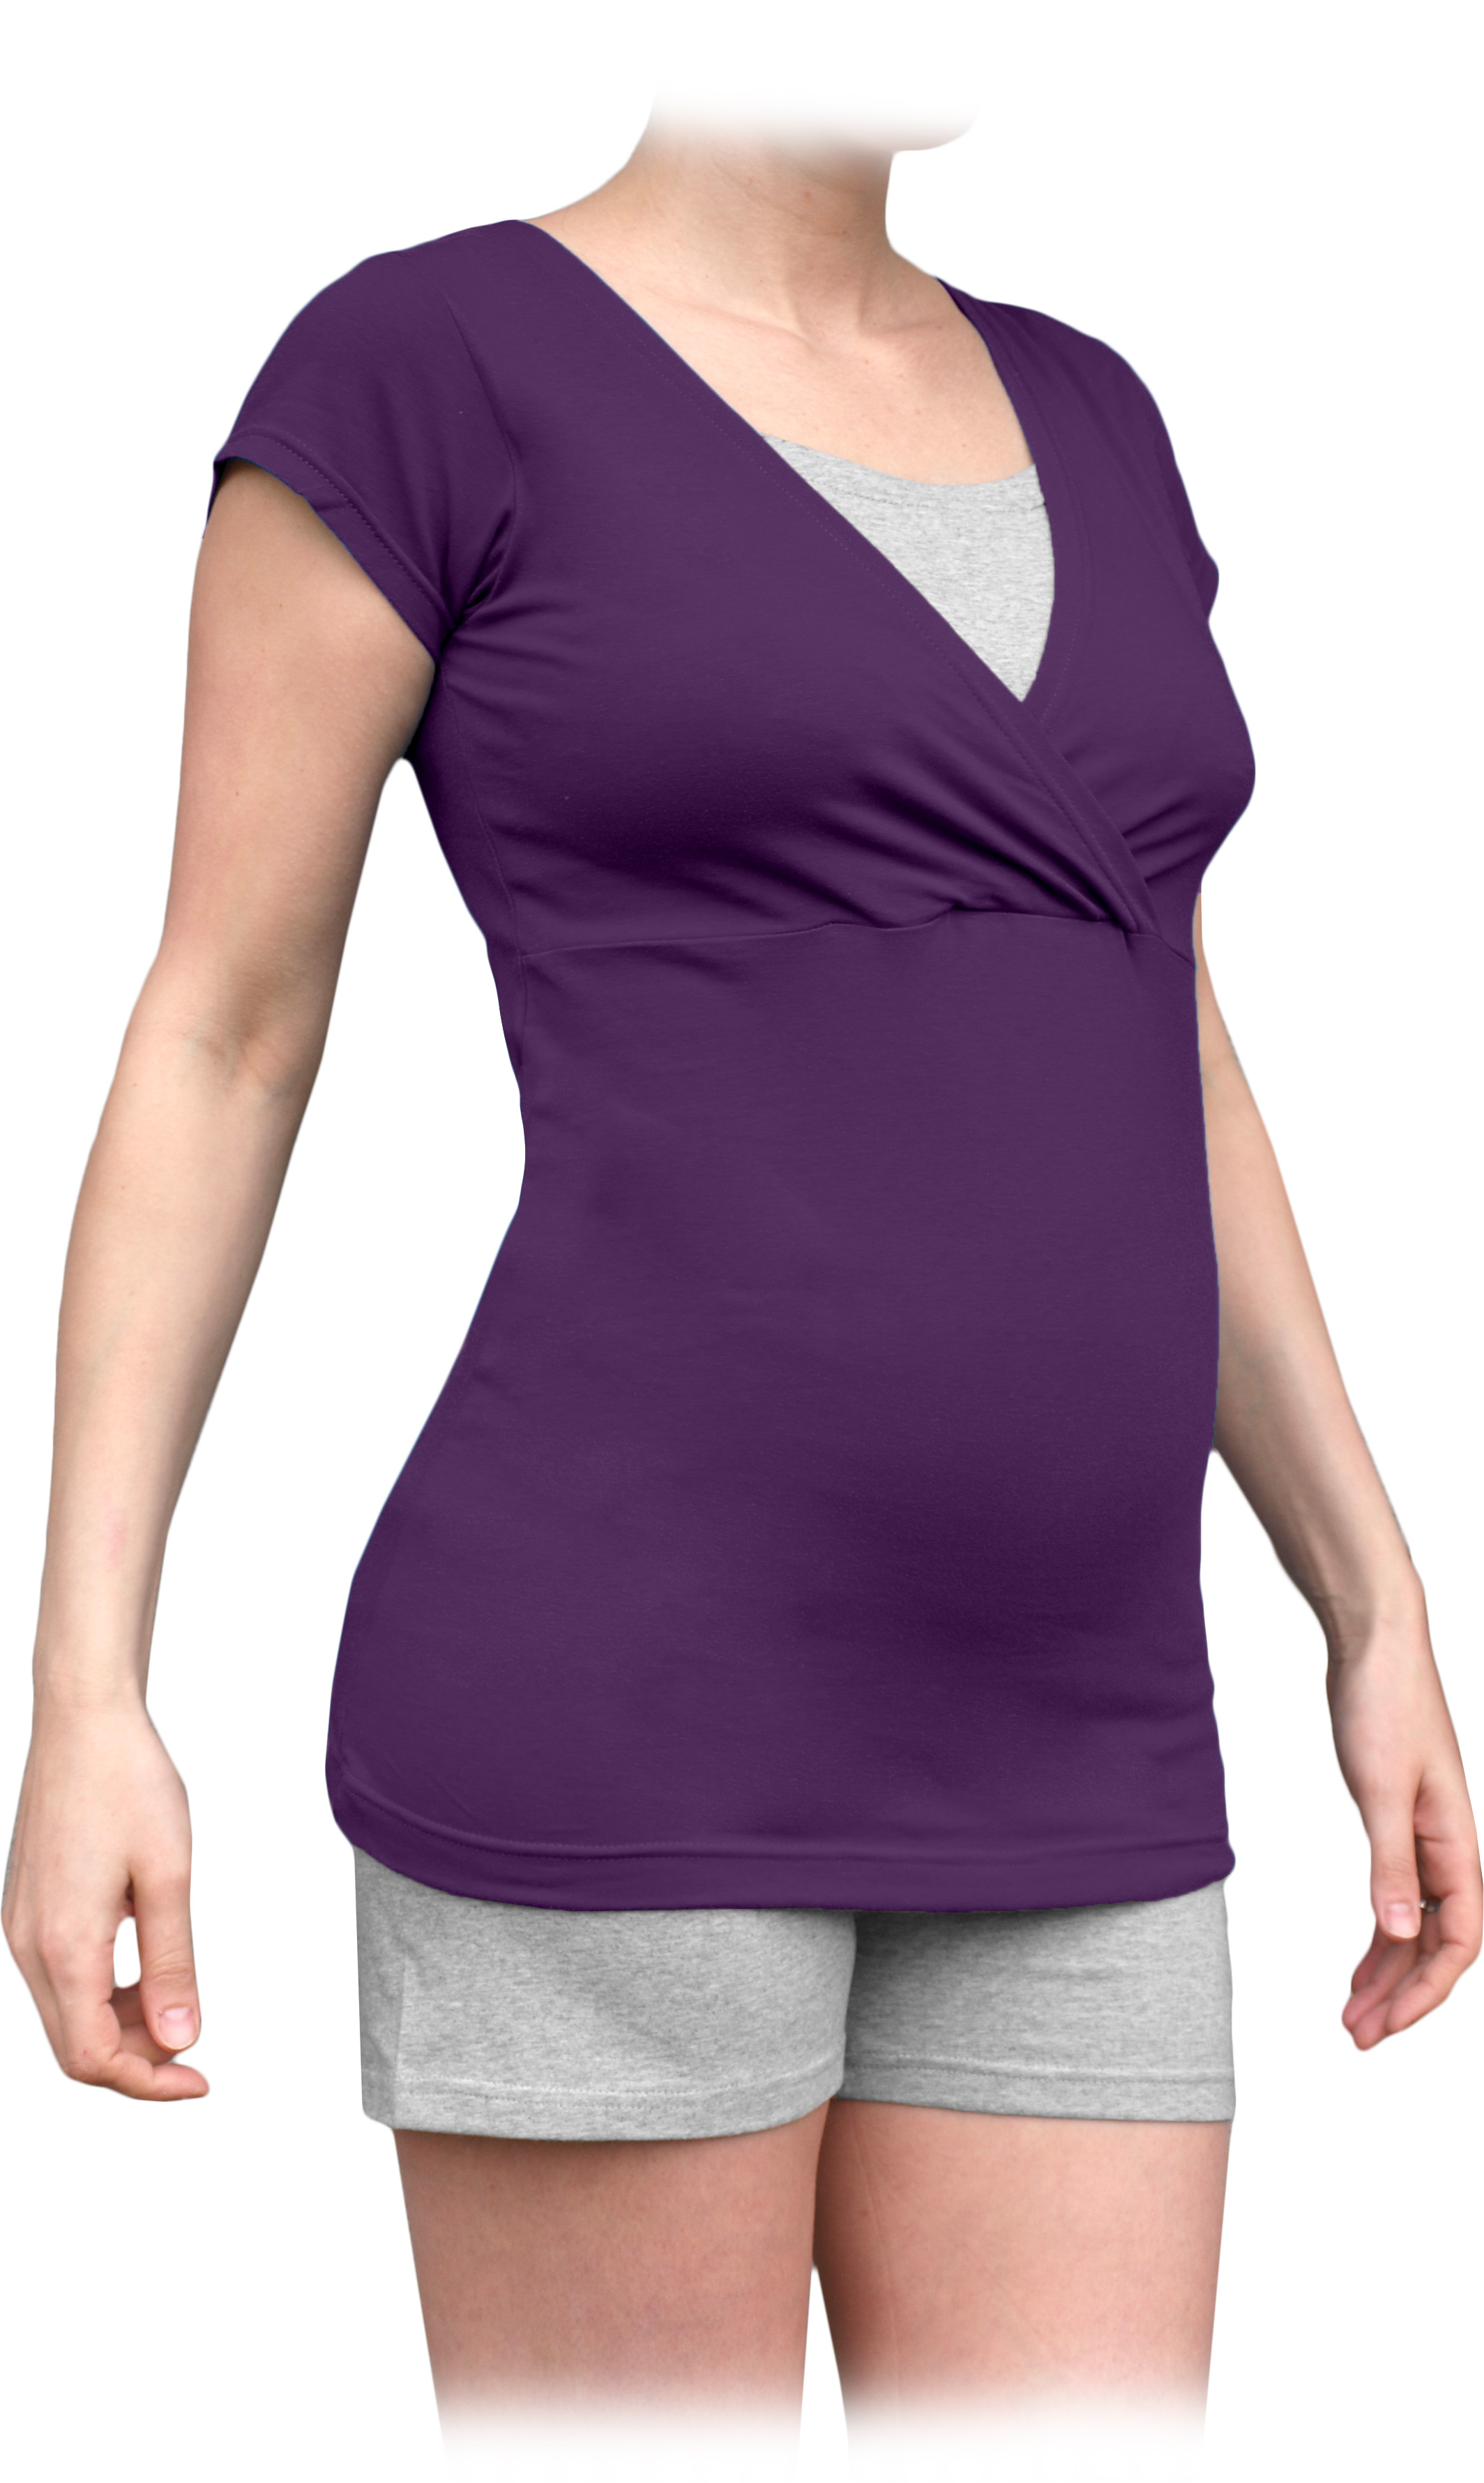 Umstands- und Stillschlafanzug, neuer Typ, kurz, pflaumenviolet + grau